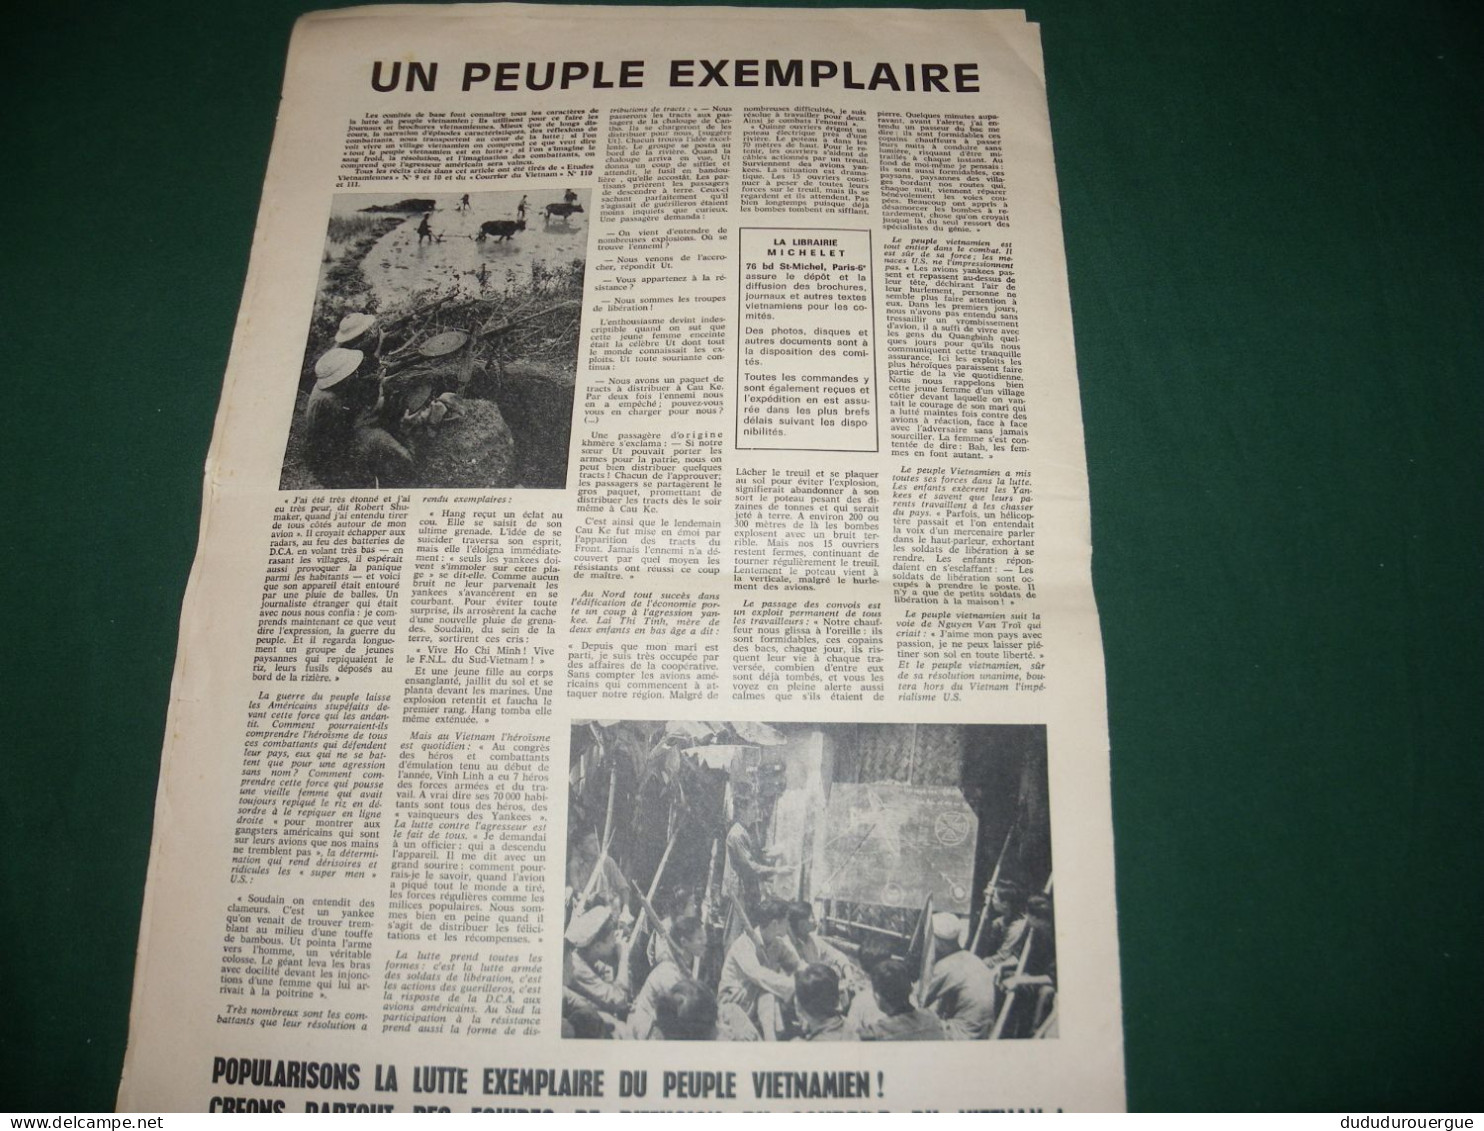 GUERRE DU VIETNAM : " VICTOIRE POUR LE VIETNAM " JOURNAL DES COMITES VIETNAM DE BASE , LE N ° 1 - 1950 - Nu